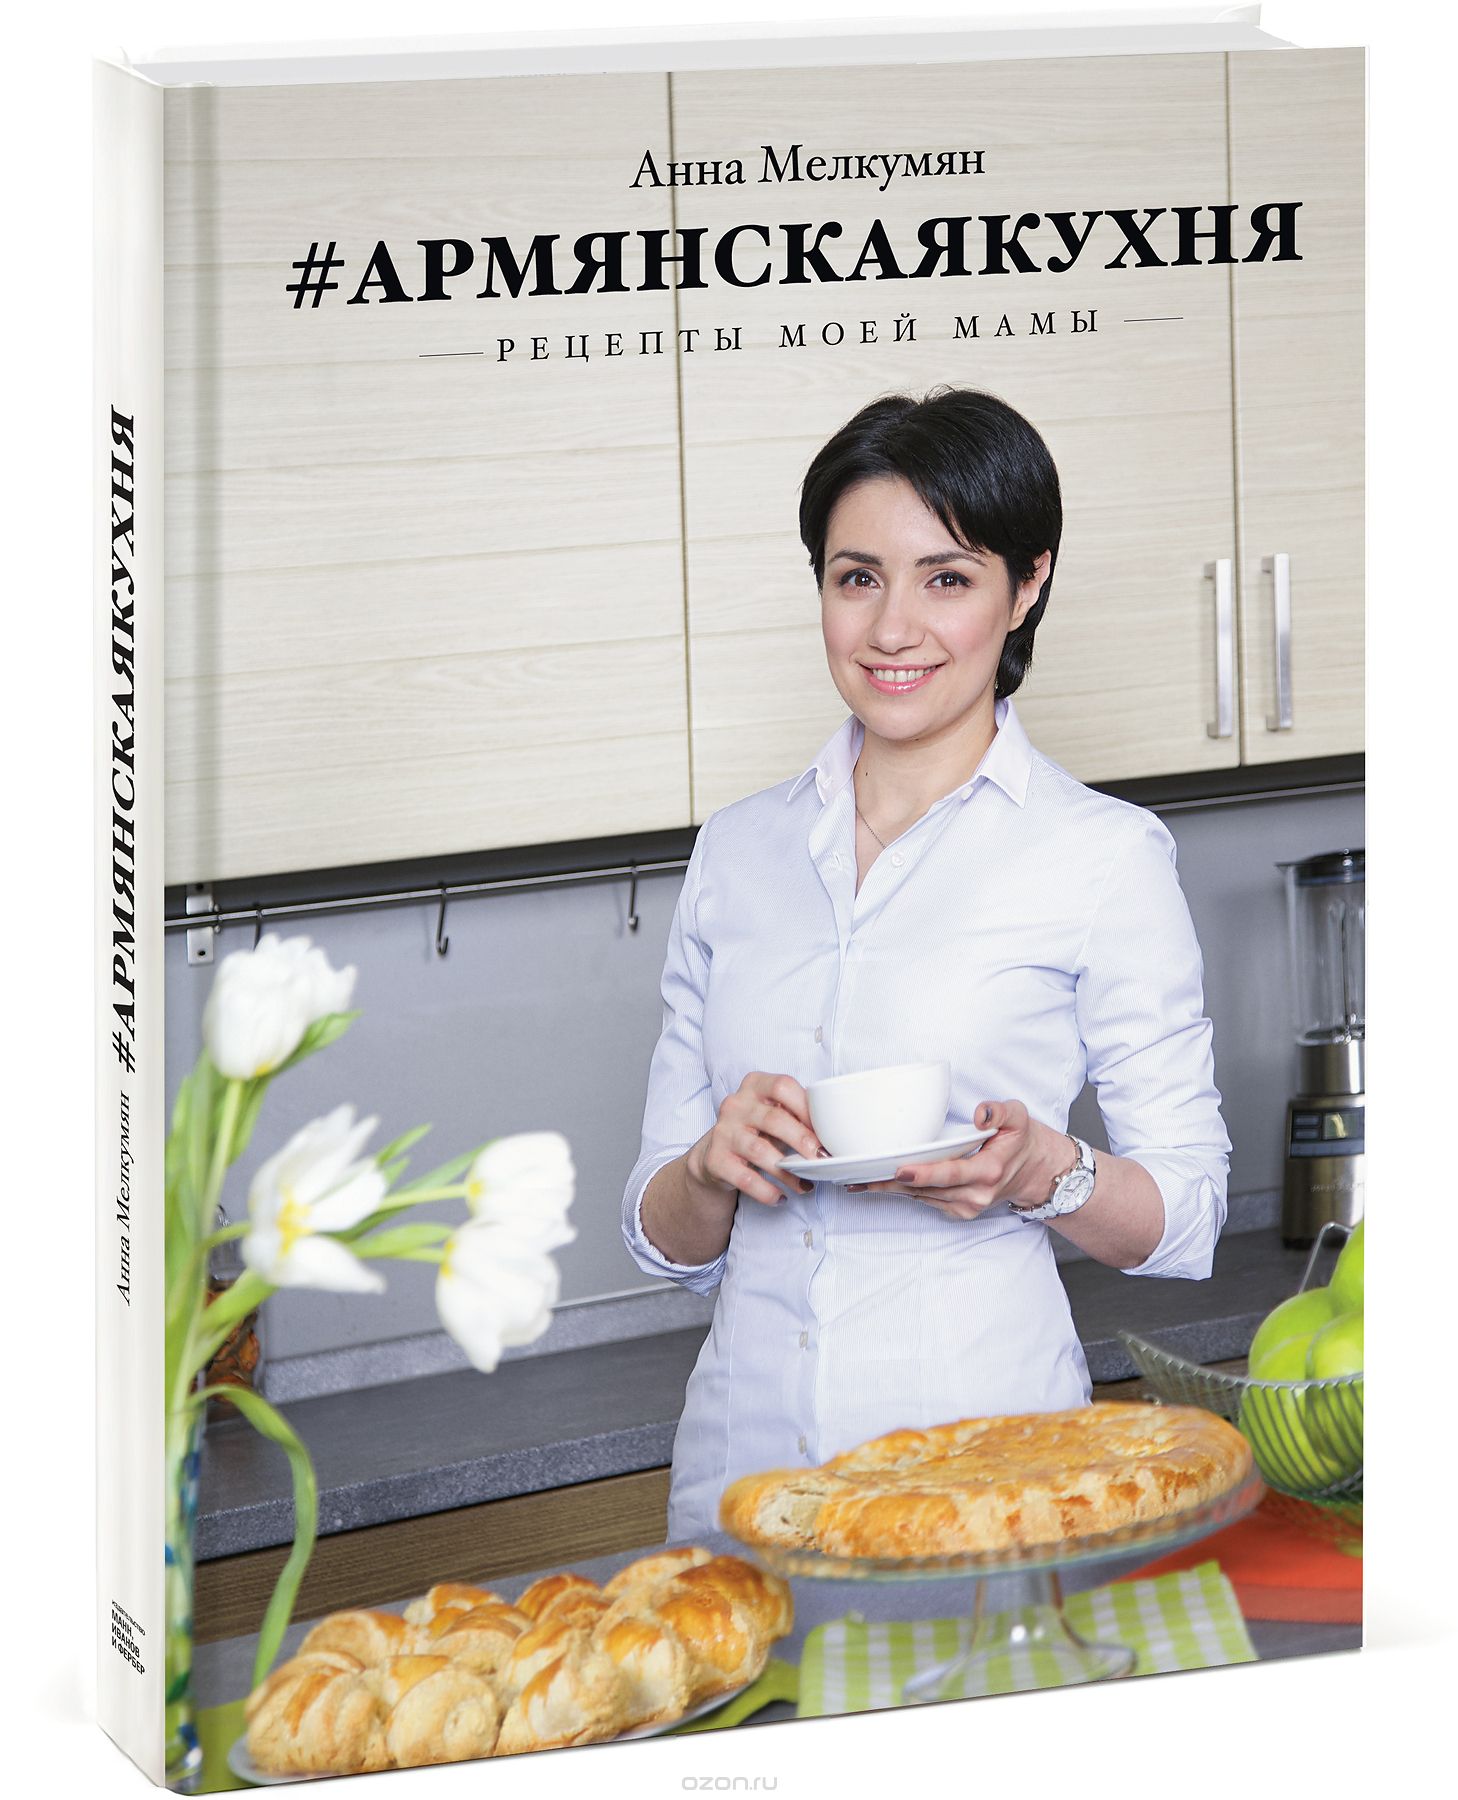 Армянская кухня. Рецепты моей мамы, Анна Мелкумян